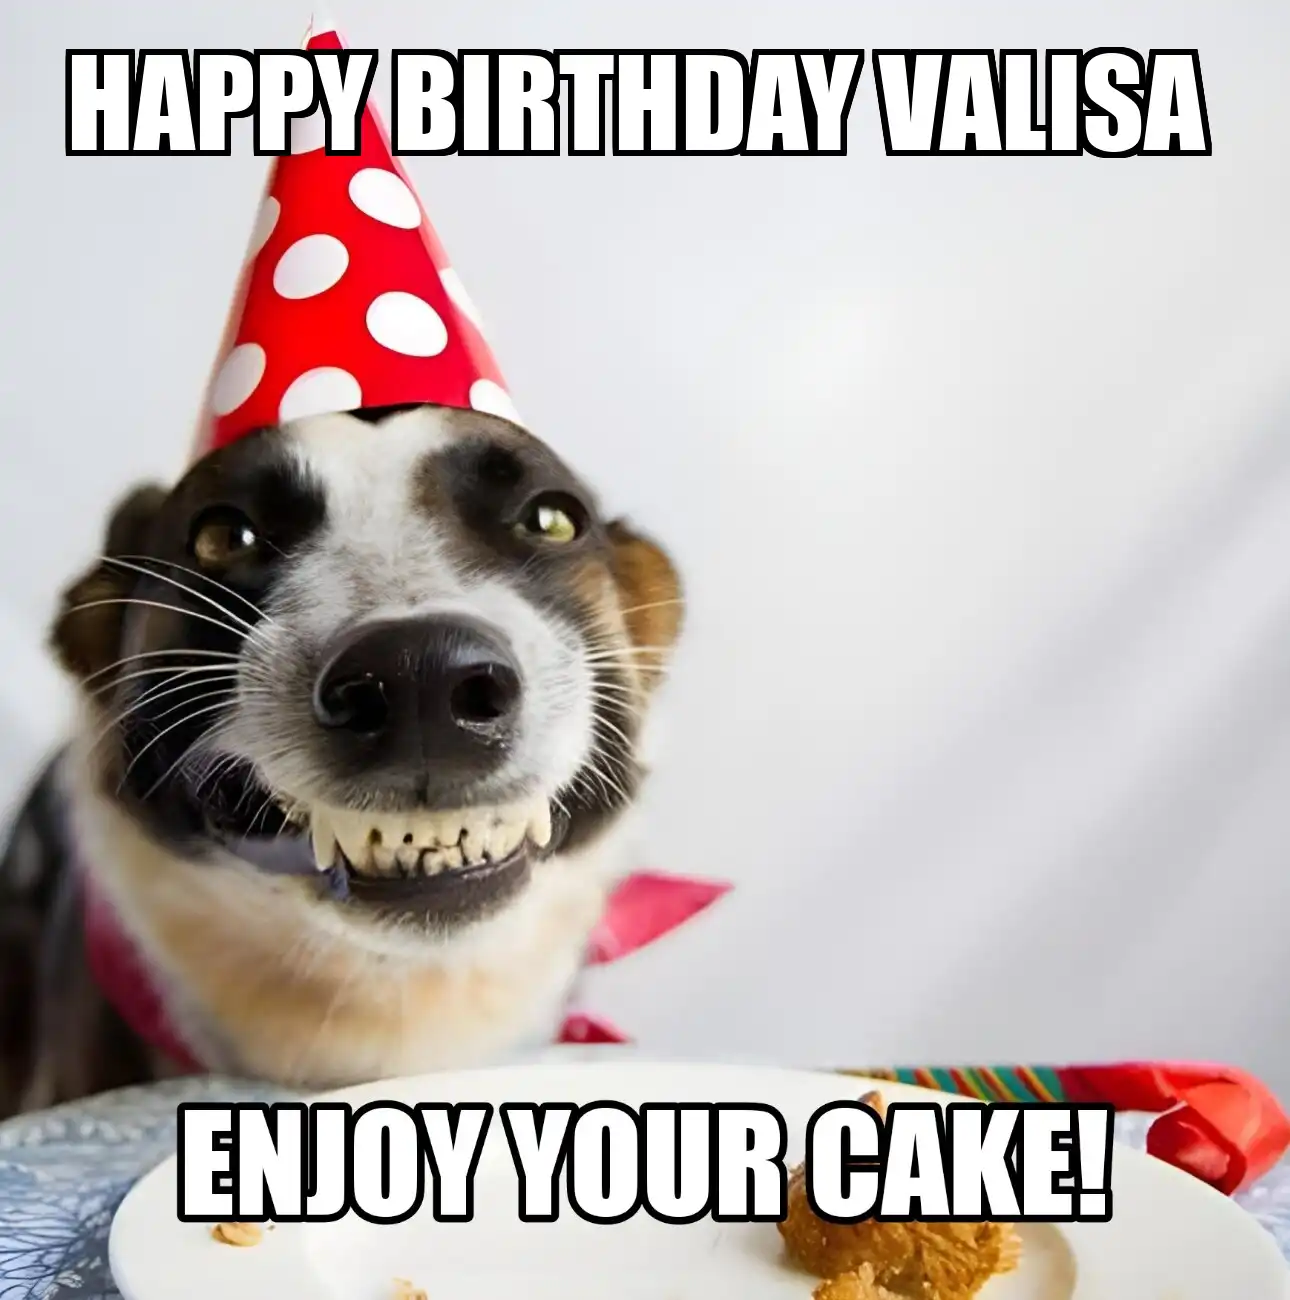 Happy Birthday Valisa Enjoy Your Cake Dog Meme